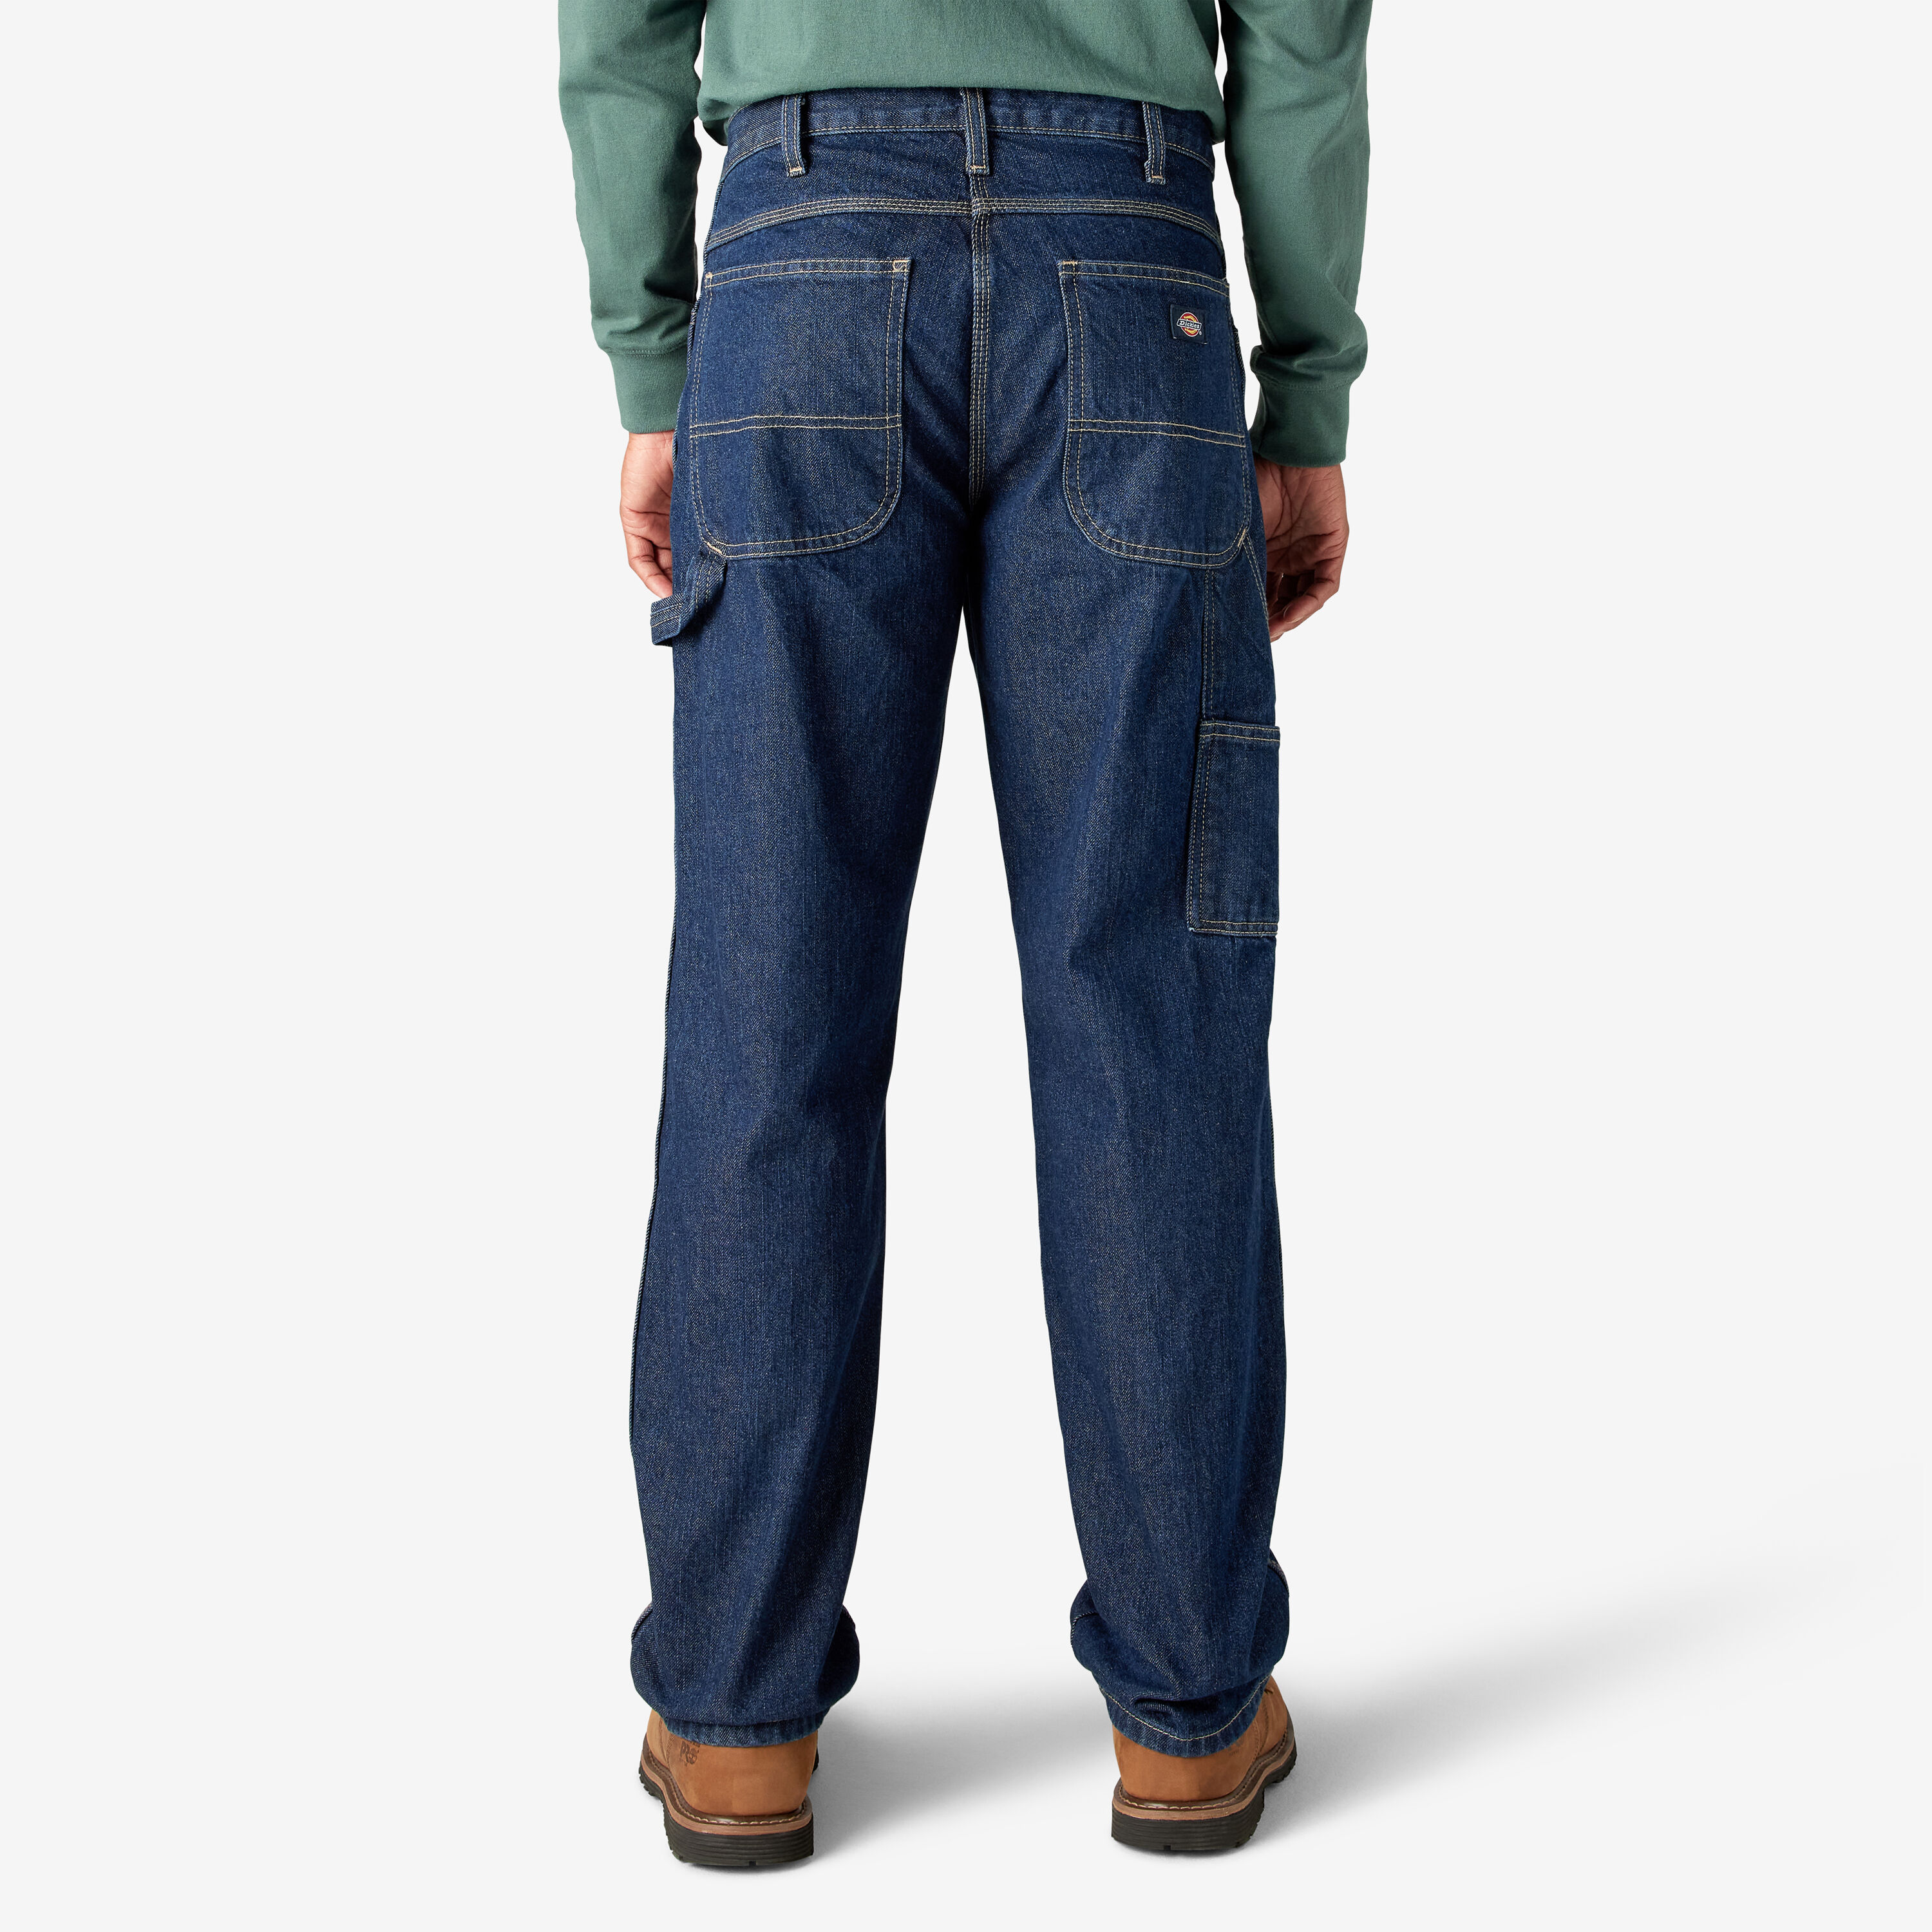 dickies men's carpenter jeans